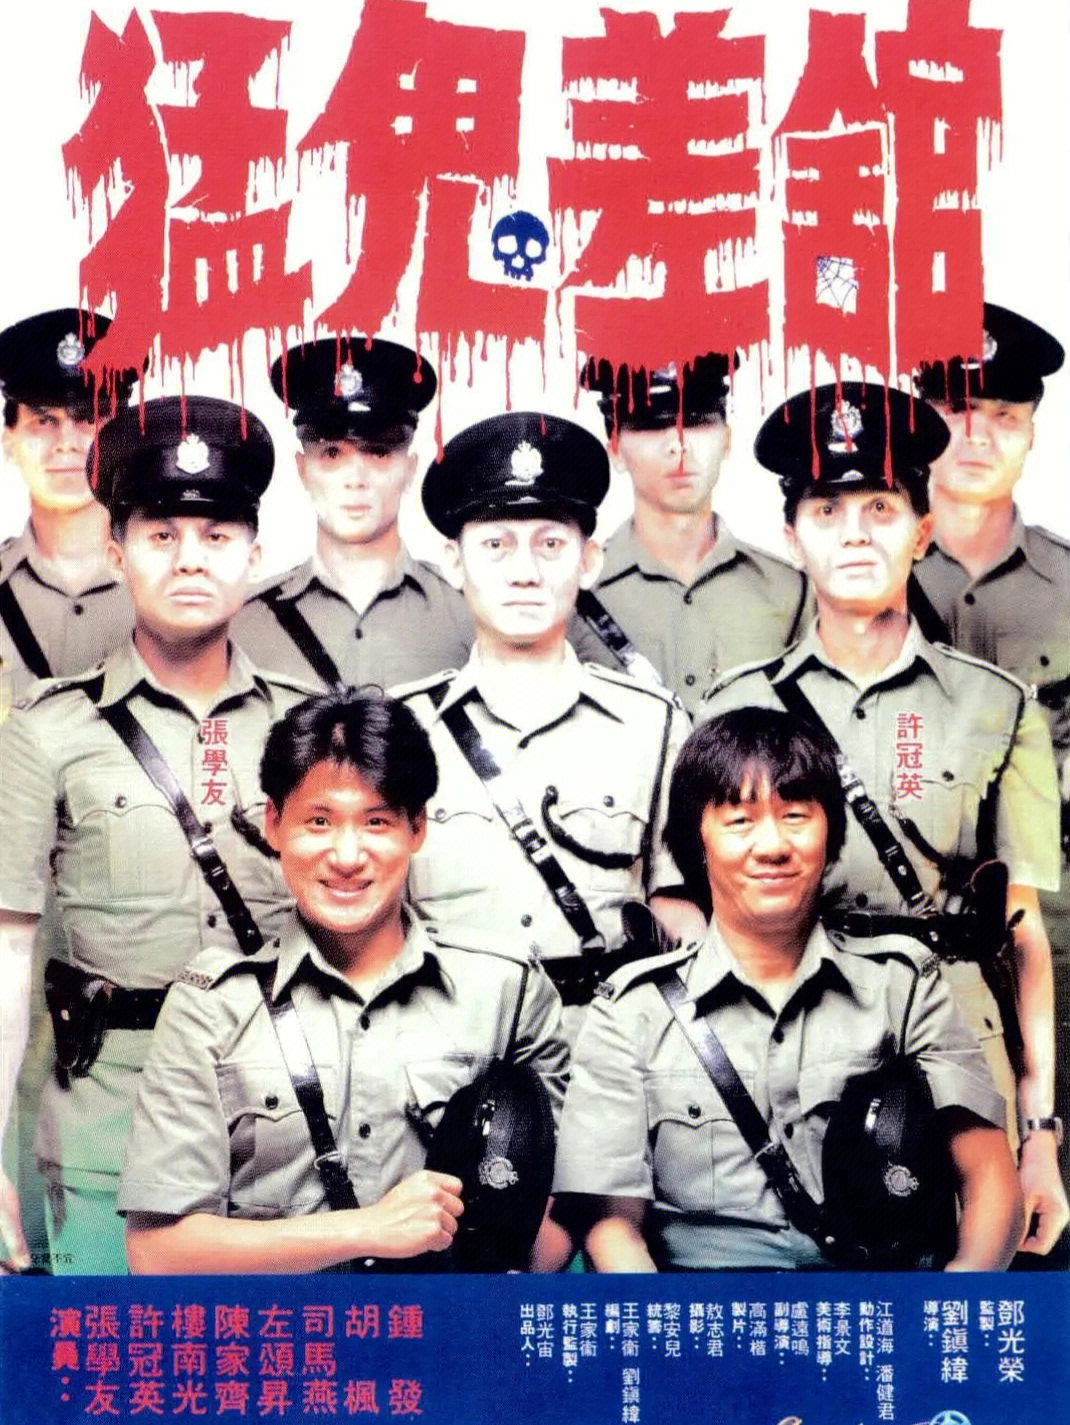 刘镇伟导演的恐怖喜剧还是不错的,加上张学友和许冠英的表演,真是让小